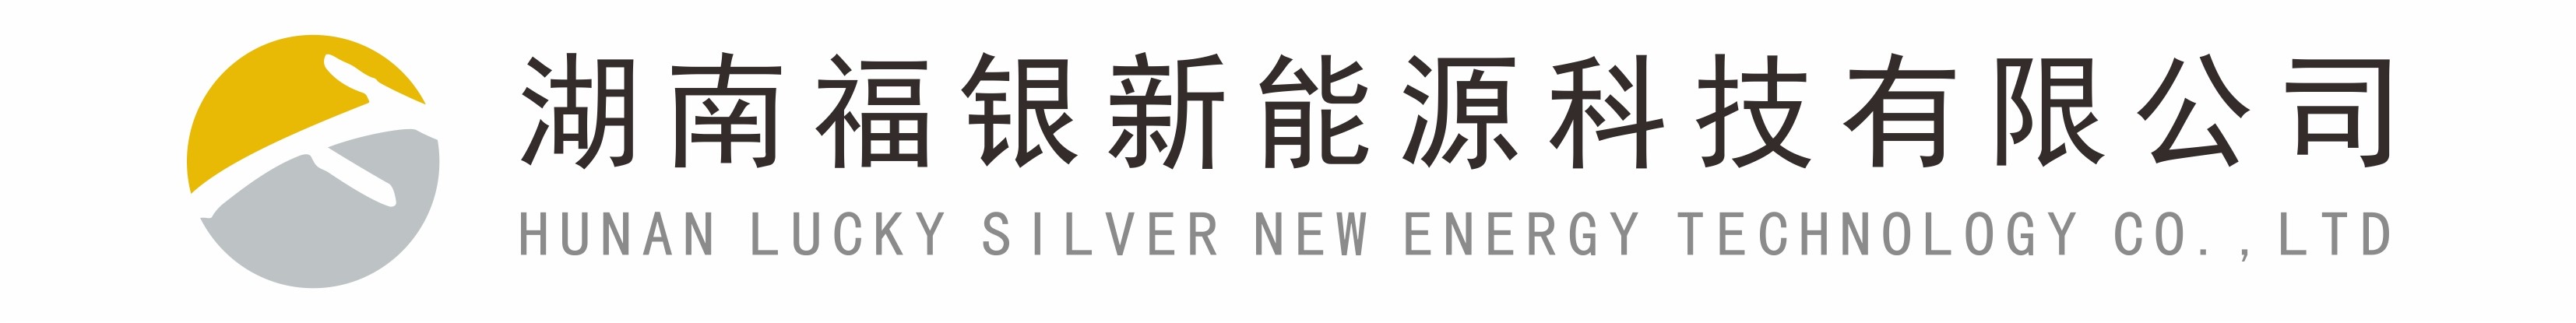 湖南福银新能源科技有限公司